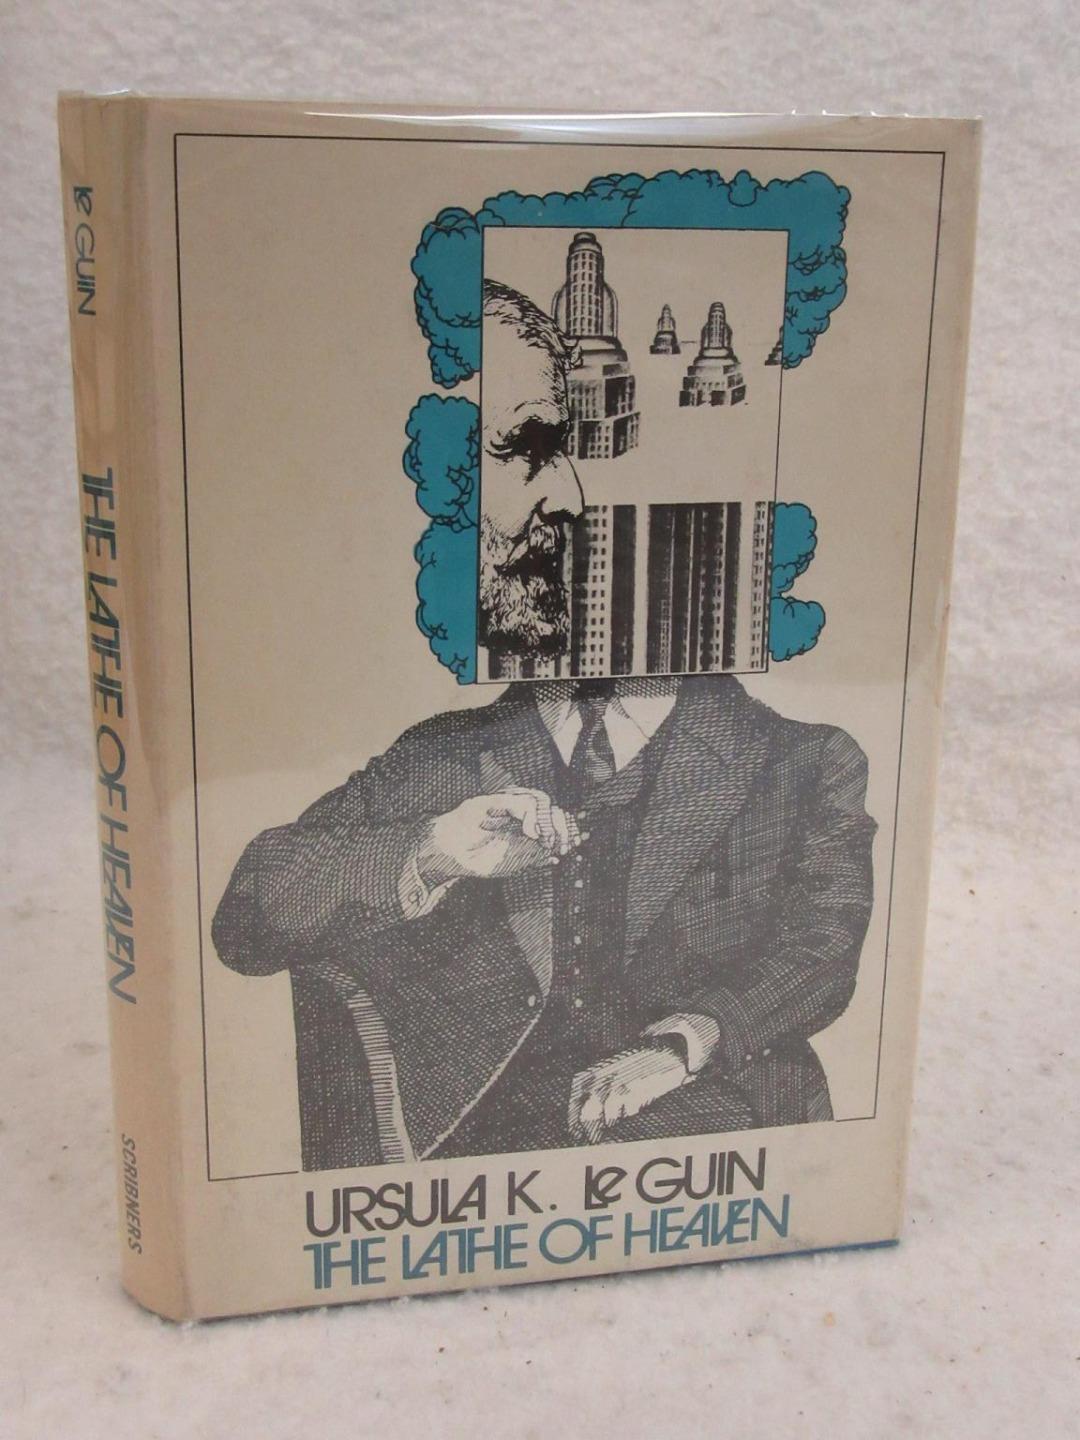 Ursula K. Le Guin THE LATHE OF HEAVEN 1971 Charles Scribner's Early Book Club Natychmiastowa dostawa w specjalnej cenie